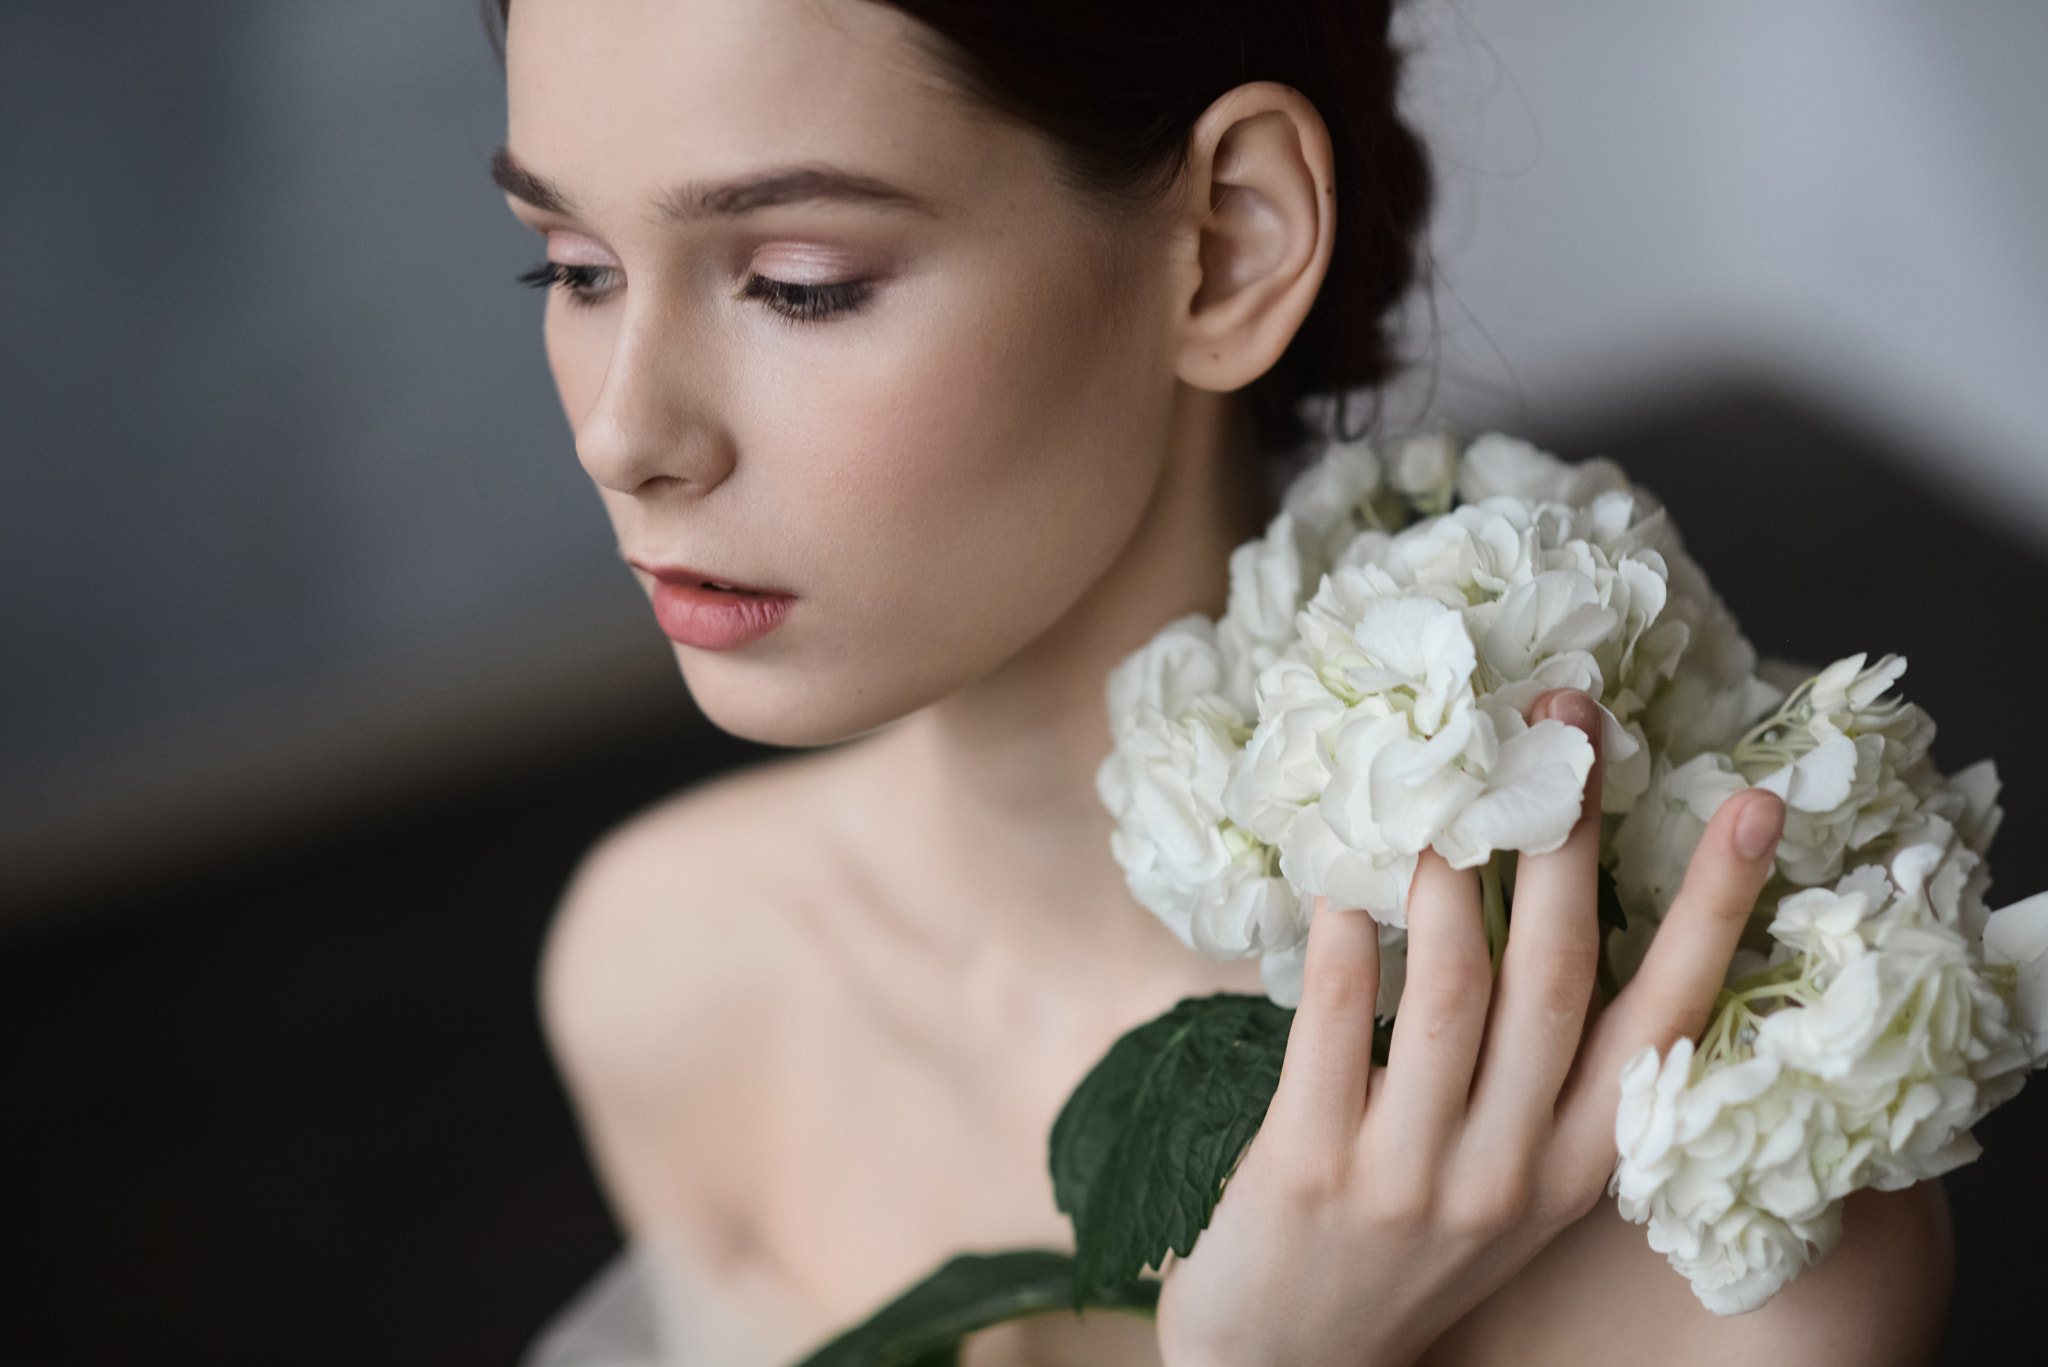 People 2048x1367 Dmitry Levykin women Irina Telicheva makeup eyeshadow looking away lipstick flowers petals leaves hydrangea portrait model